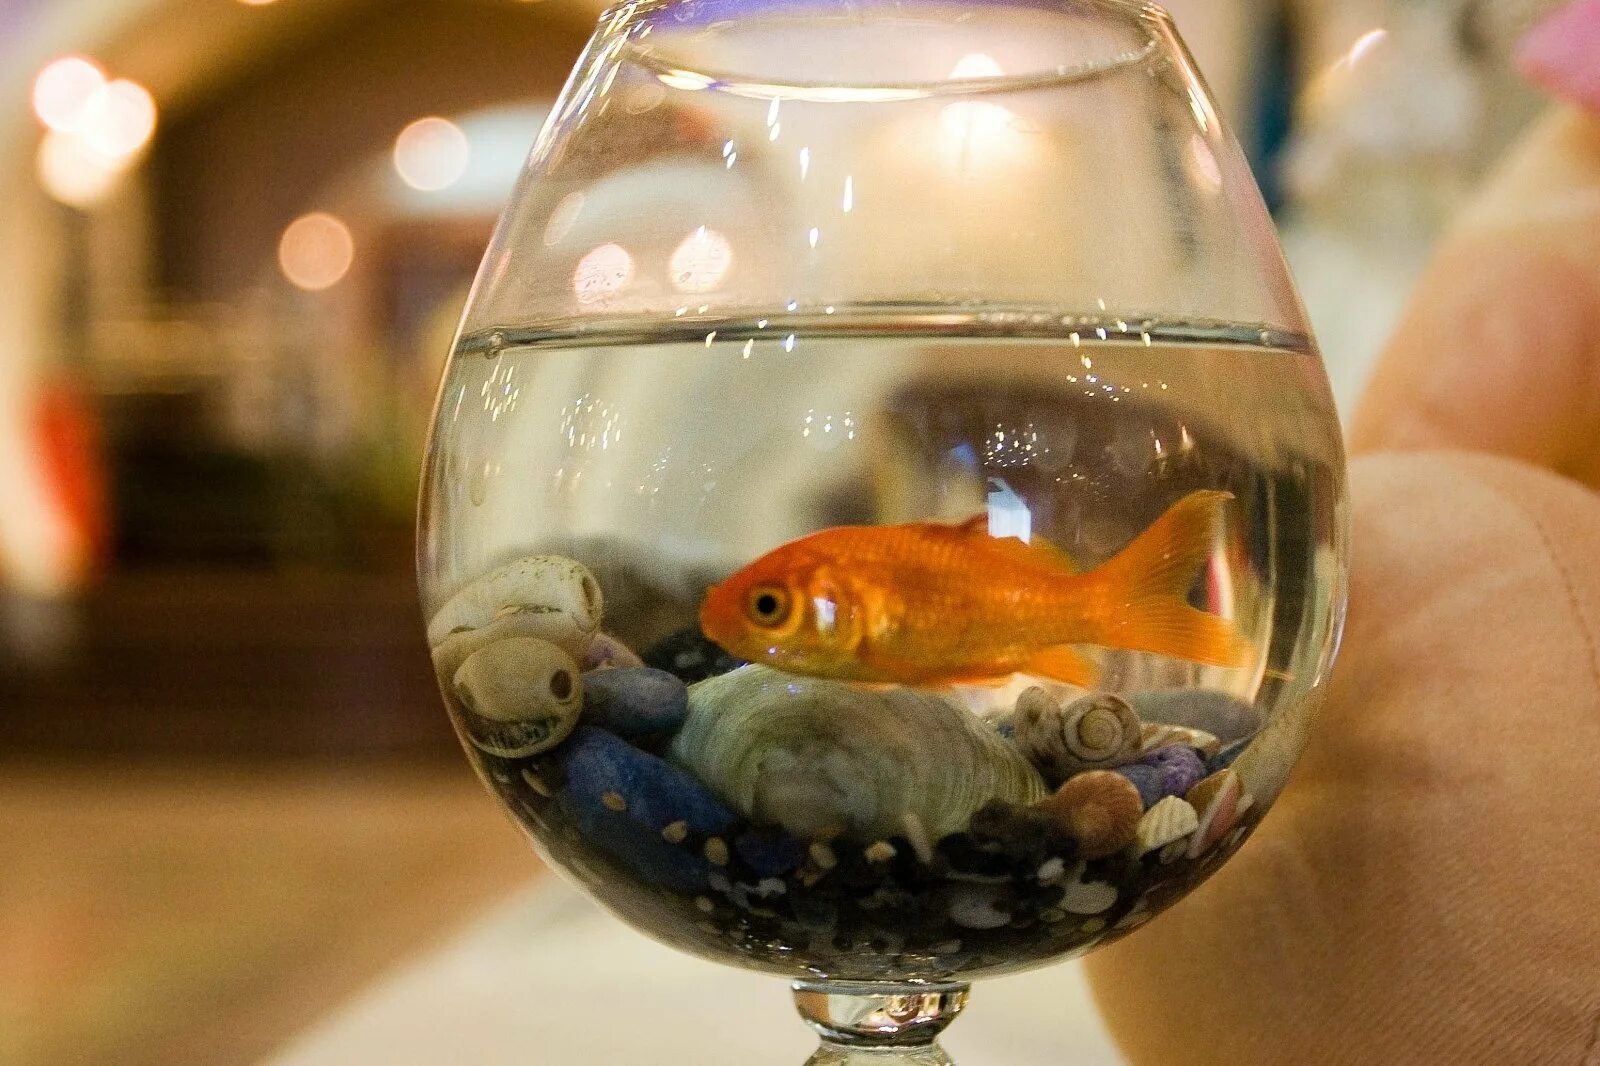 Круглый аквариум с рыбками. Золотая рыбка в аквариуме. Рыба в круглом аквариуме. Одна рыбка в круглом аквариуме.